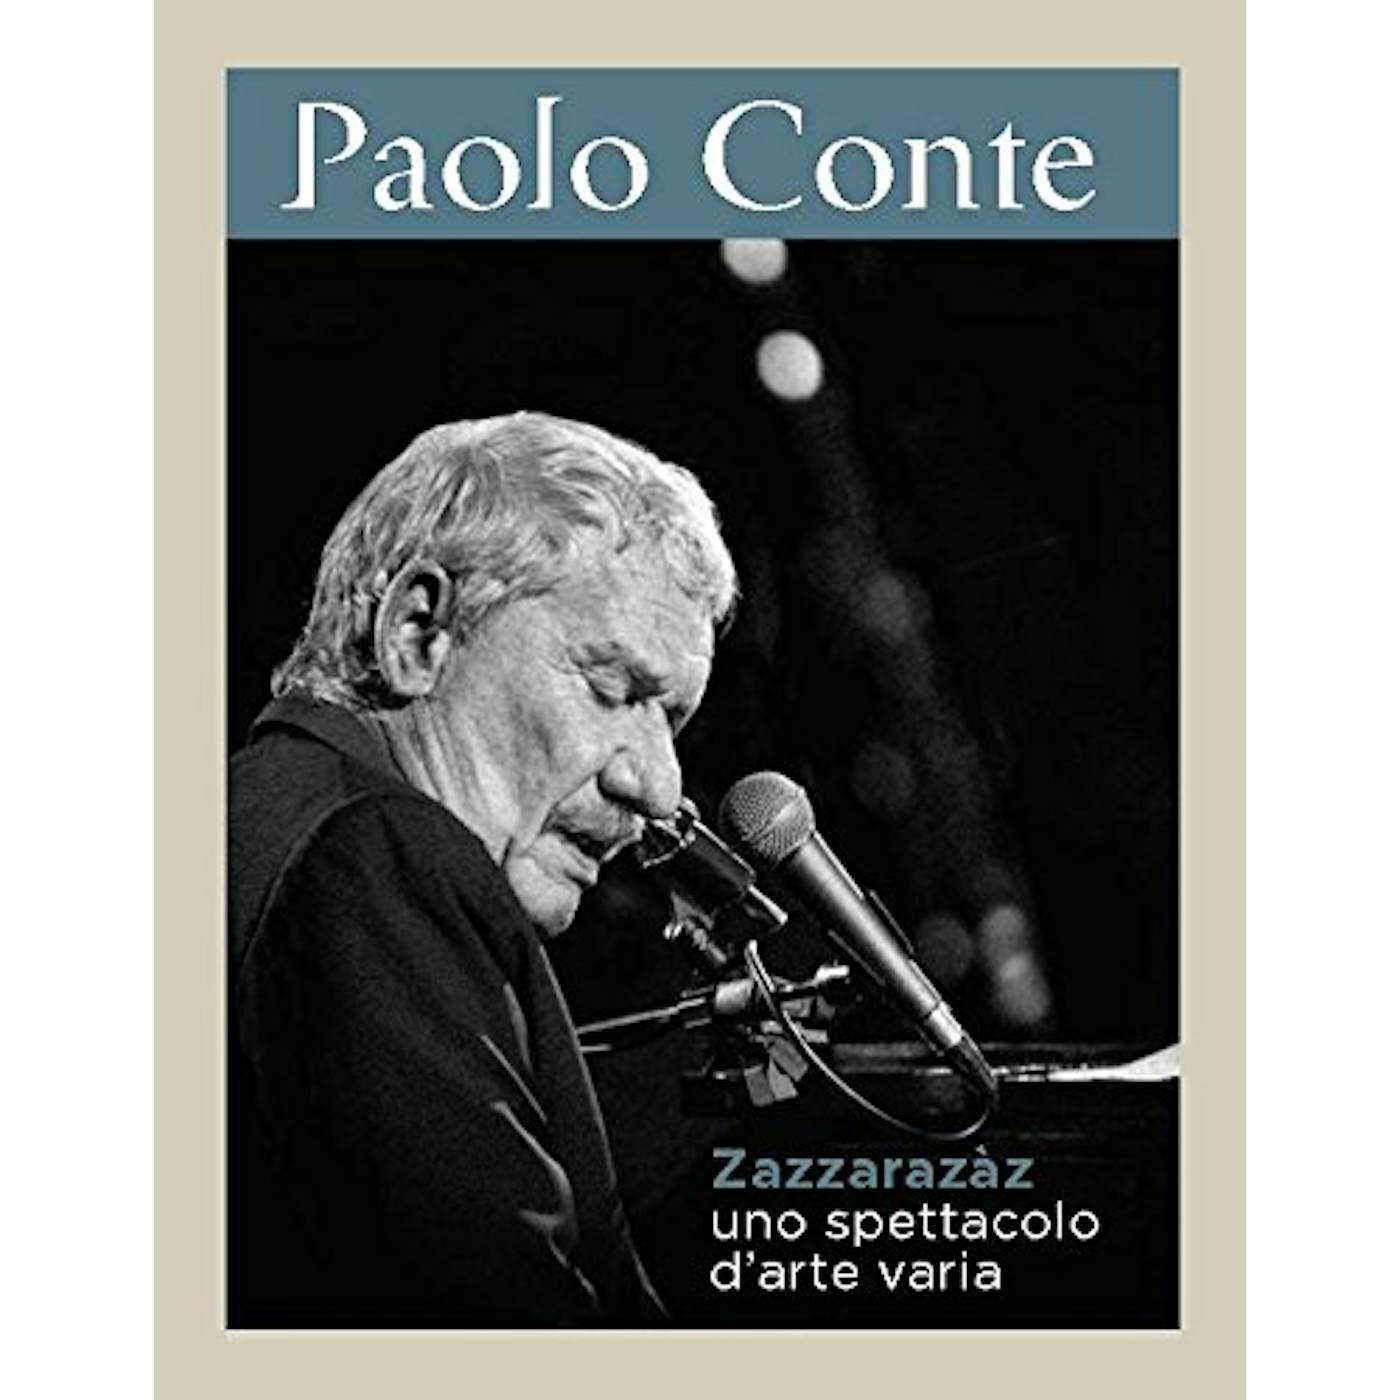 Paolo Conte ZAZZARAZAZ UNO SPETTACOLO D'ARTE VARIA CD